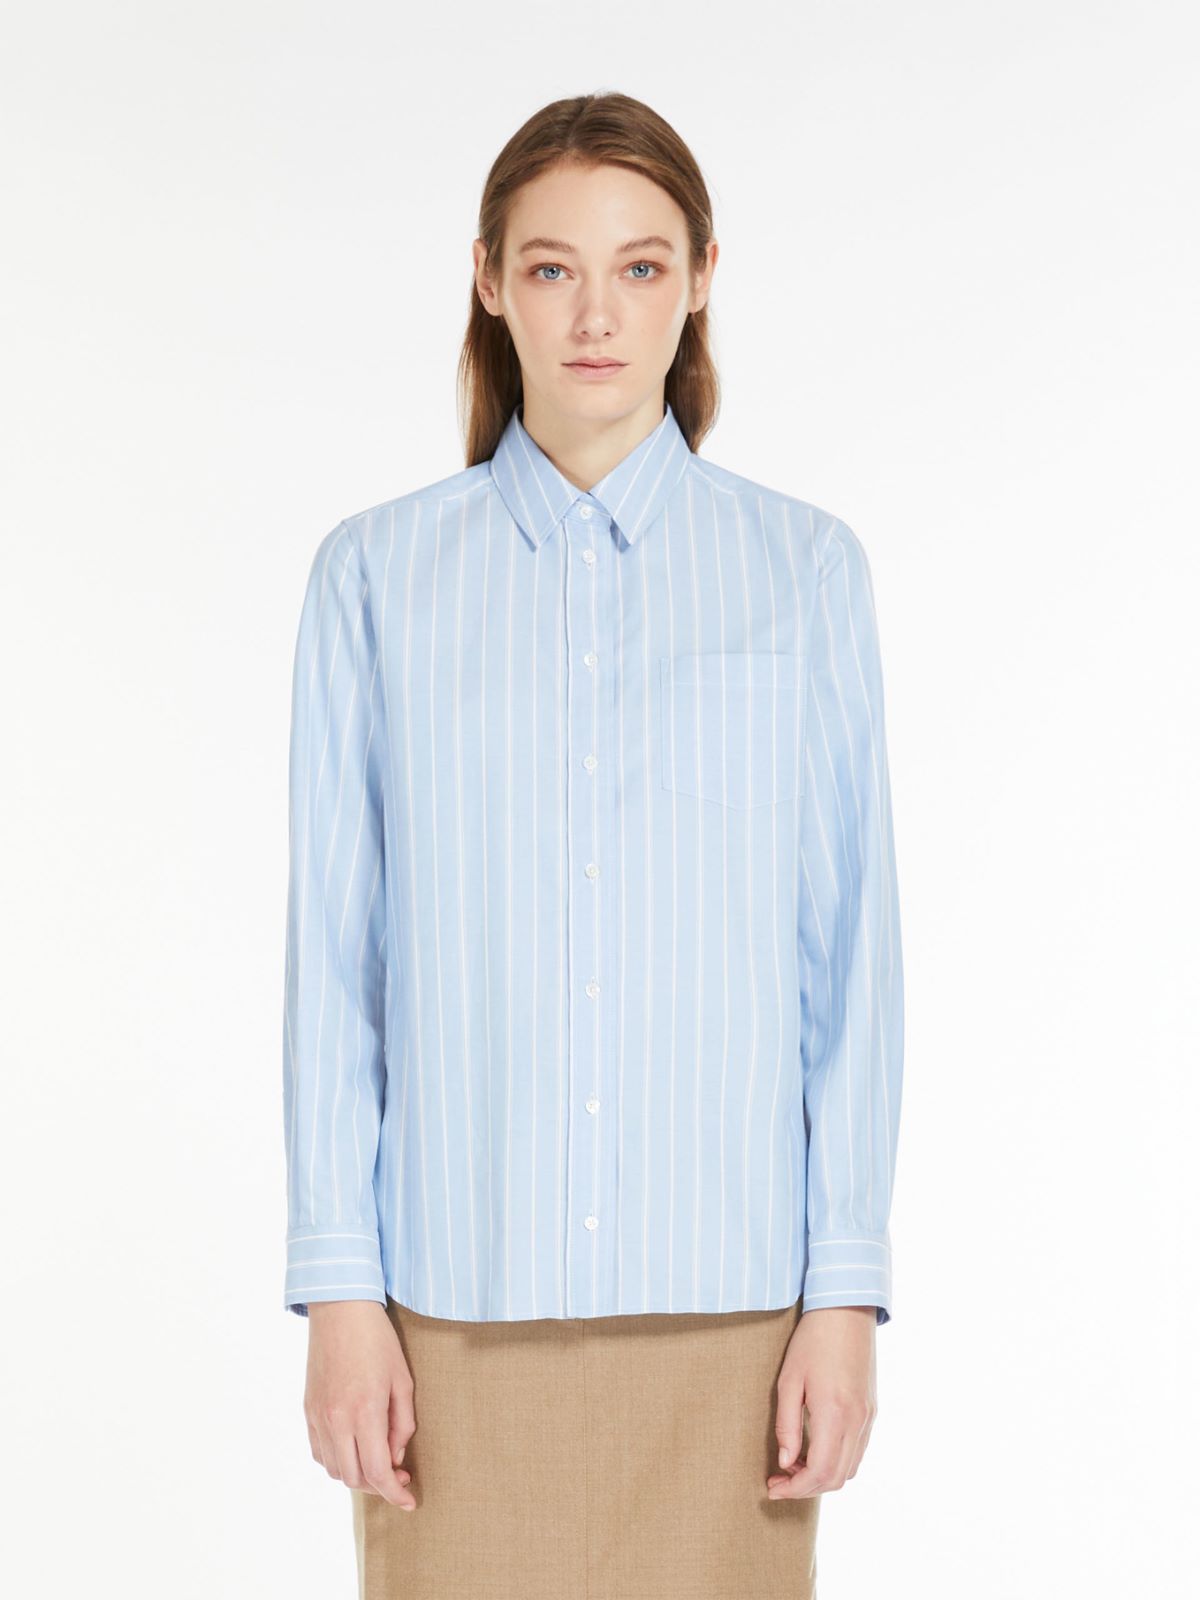 Cotton Oxford shirt - LIGHT BLUE - Weekend Max Mara - 2